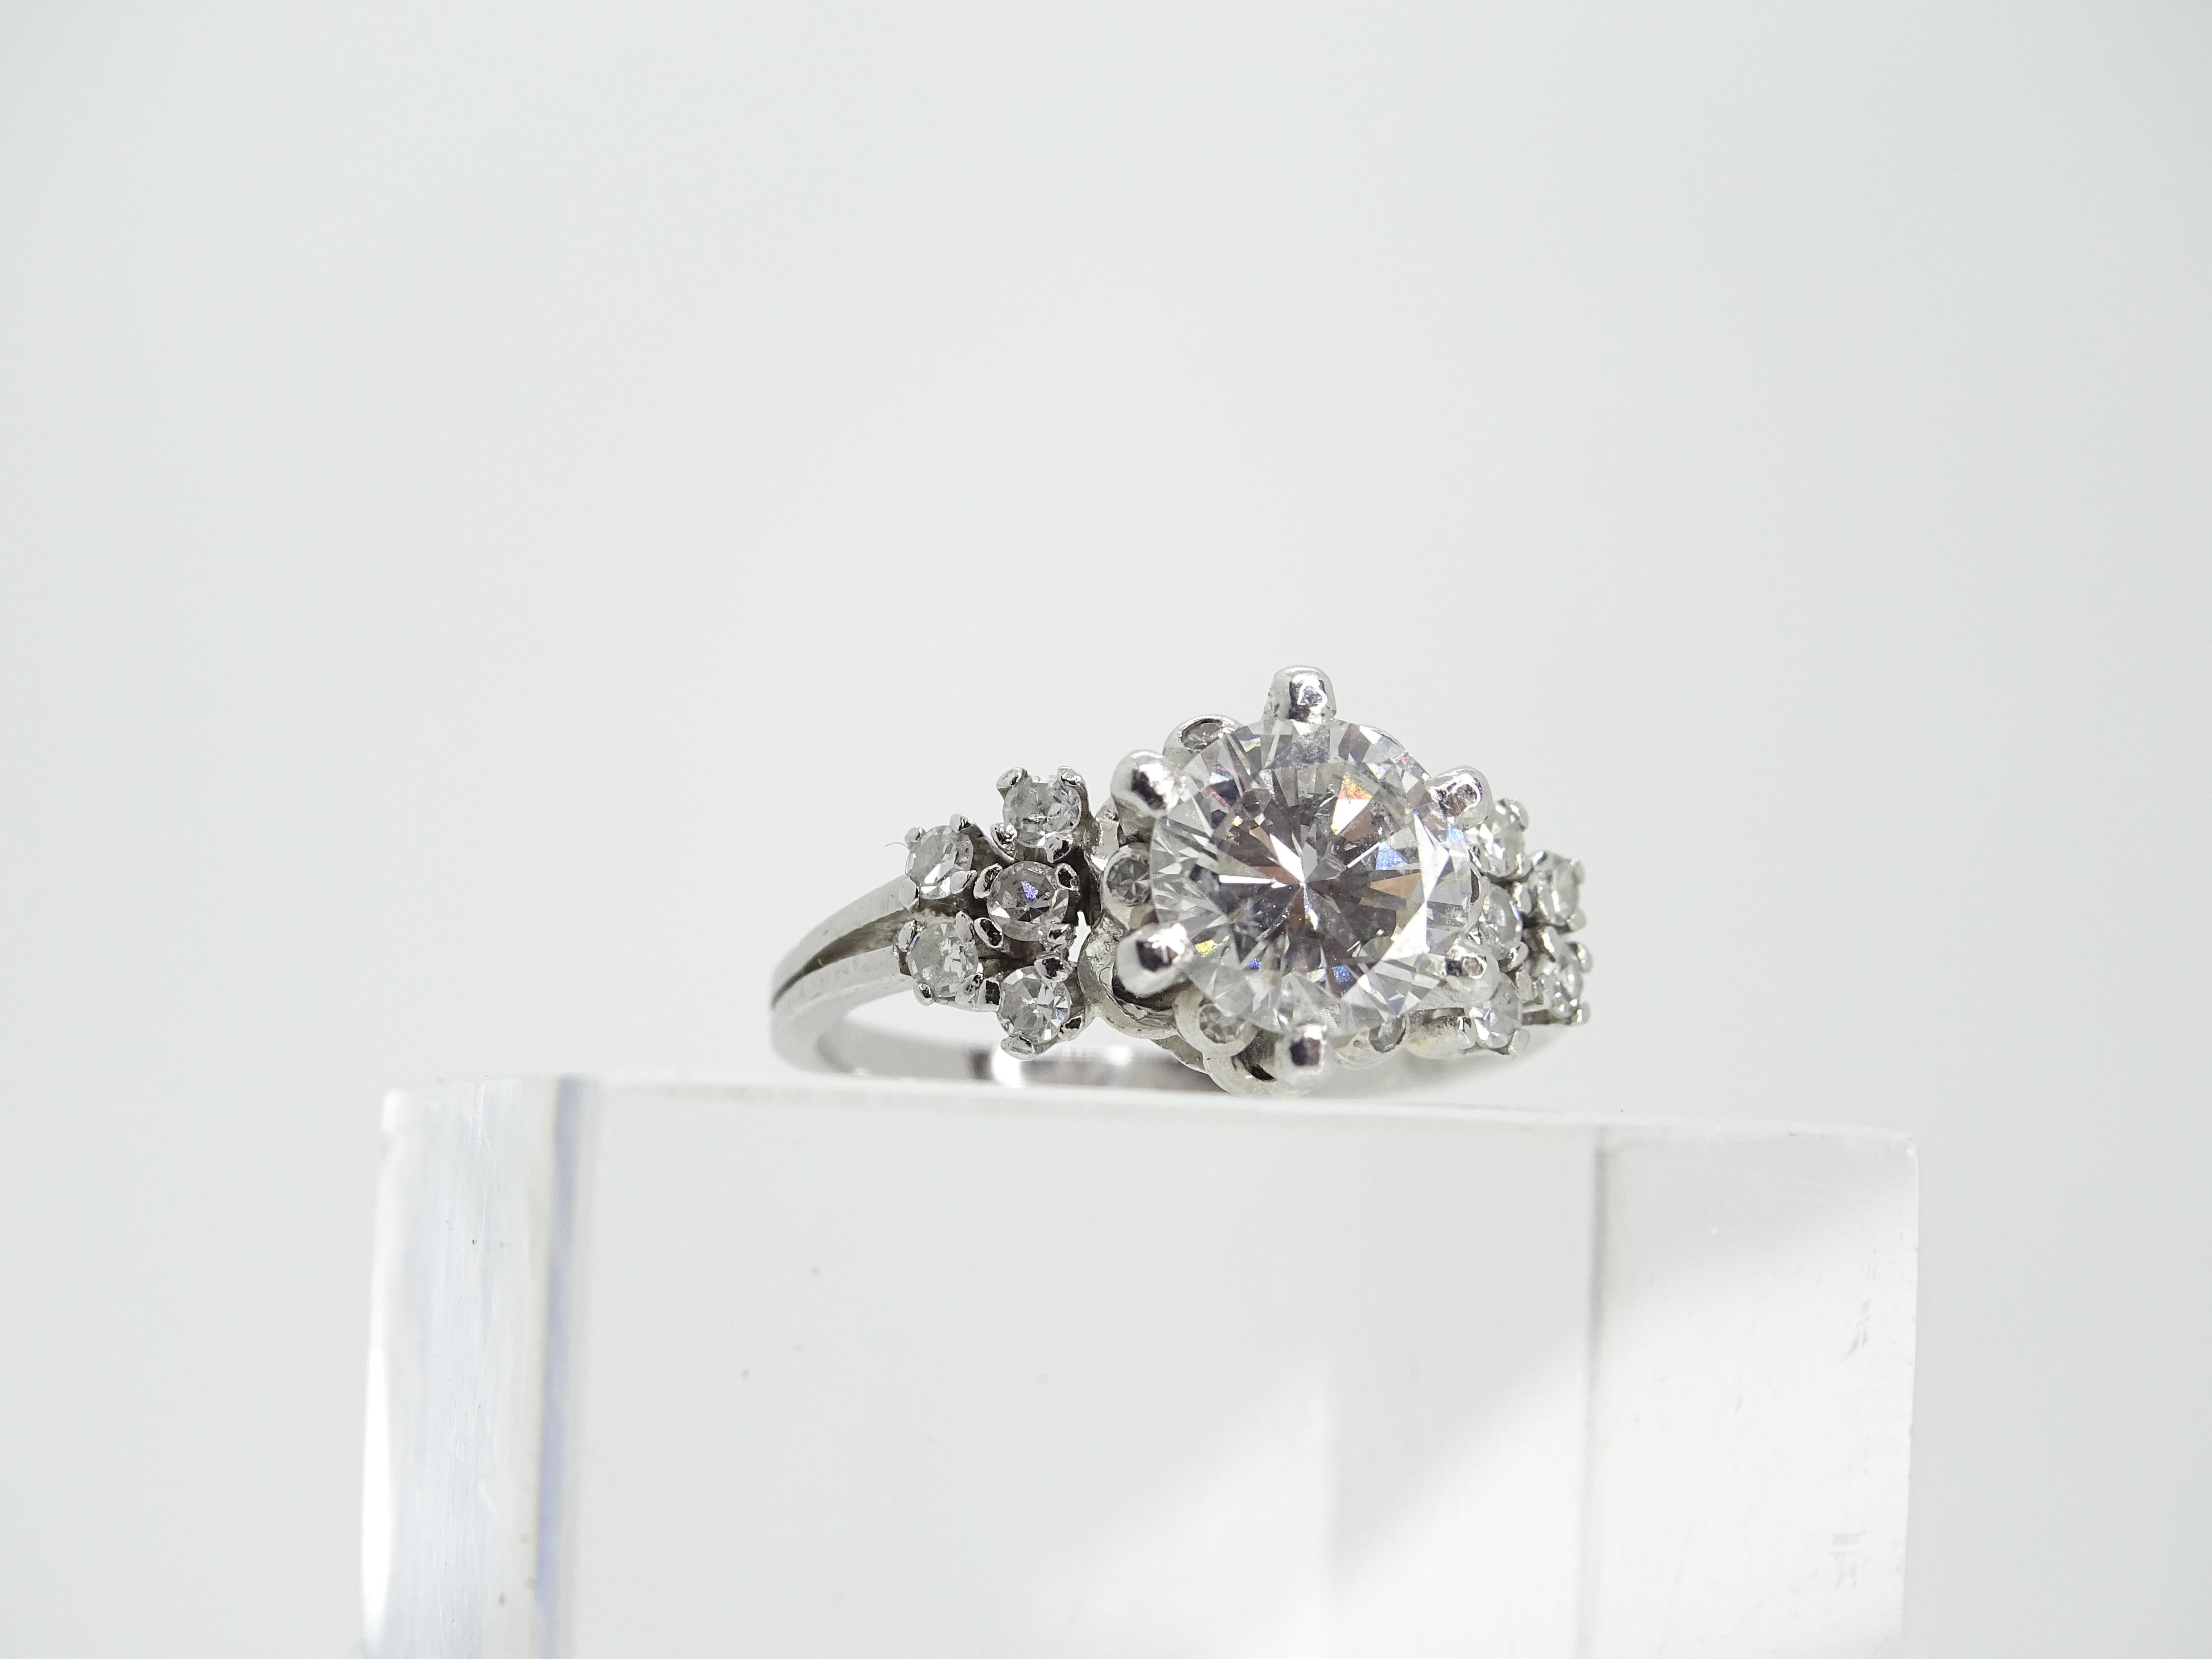 Brilliant Cut 140 Carat, Art Deco Solitaire Ring Diamond and 16 Diamonds 025 Carat